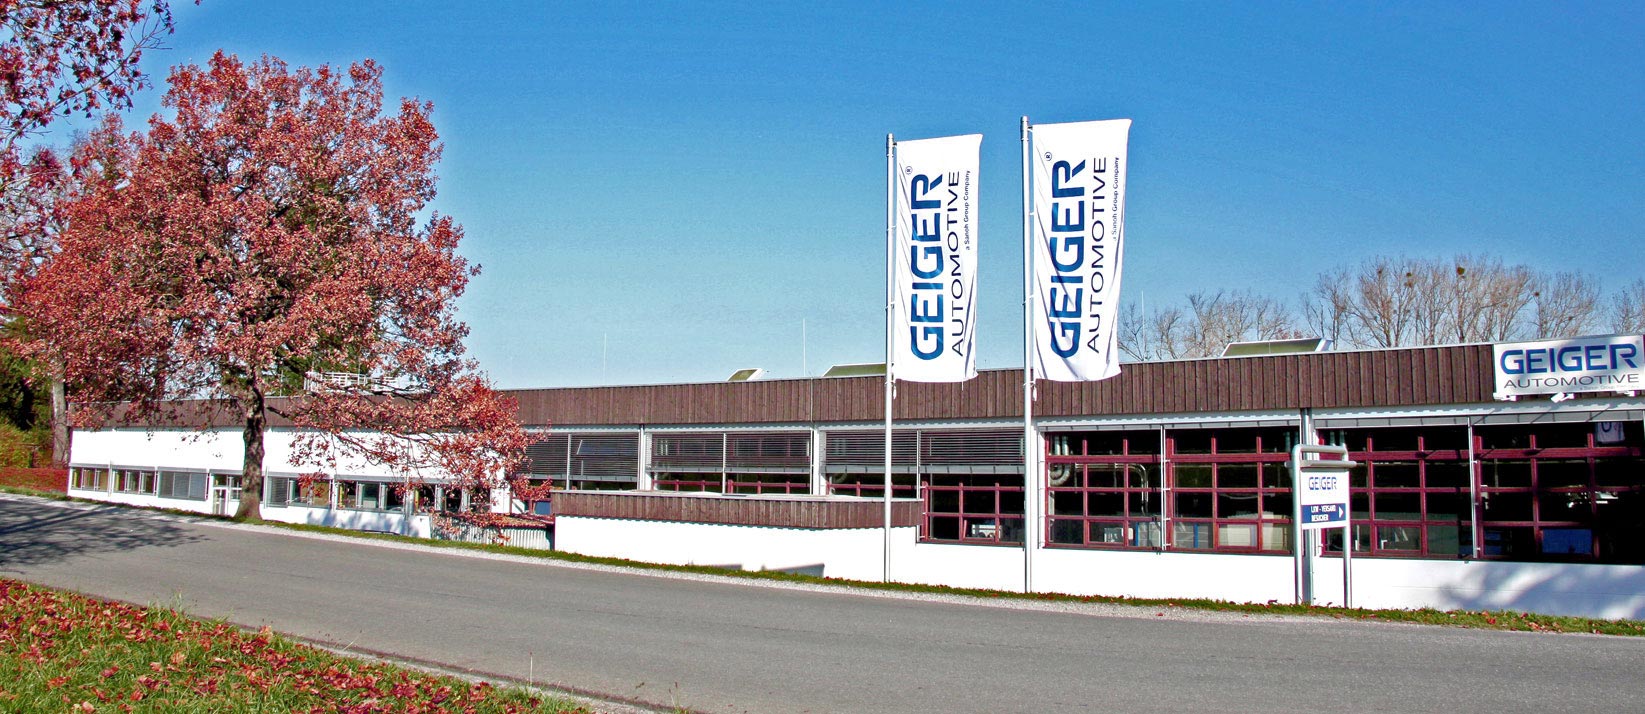 Headerbild Geiger Automotive GmbH - Industriemechaniker/Anlagentechnik (m/w/d) - 7764647